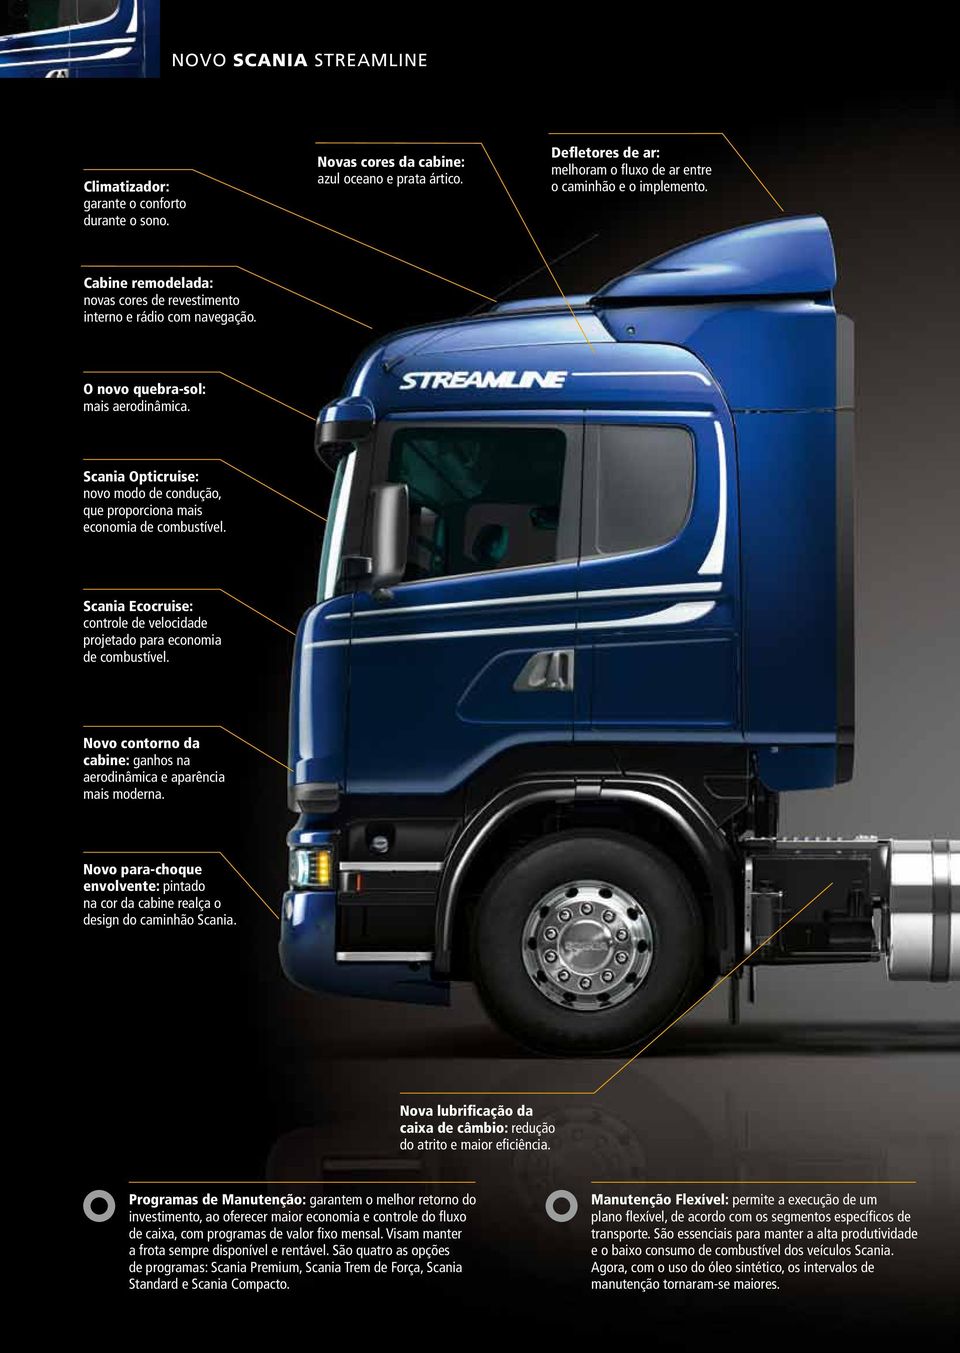 Scania Opticruise: novo modo de condução, que proporciona mais economia de combustível. Scania Ecocruise: controle de velocidade projetado para economia de combustível.